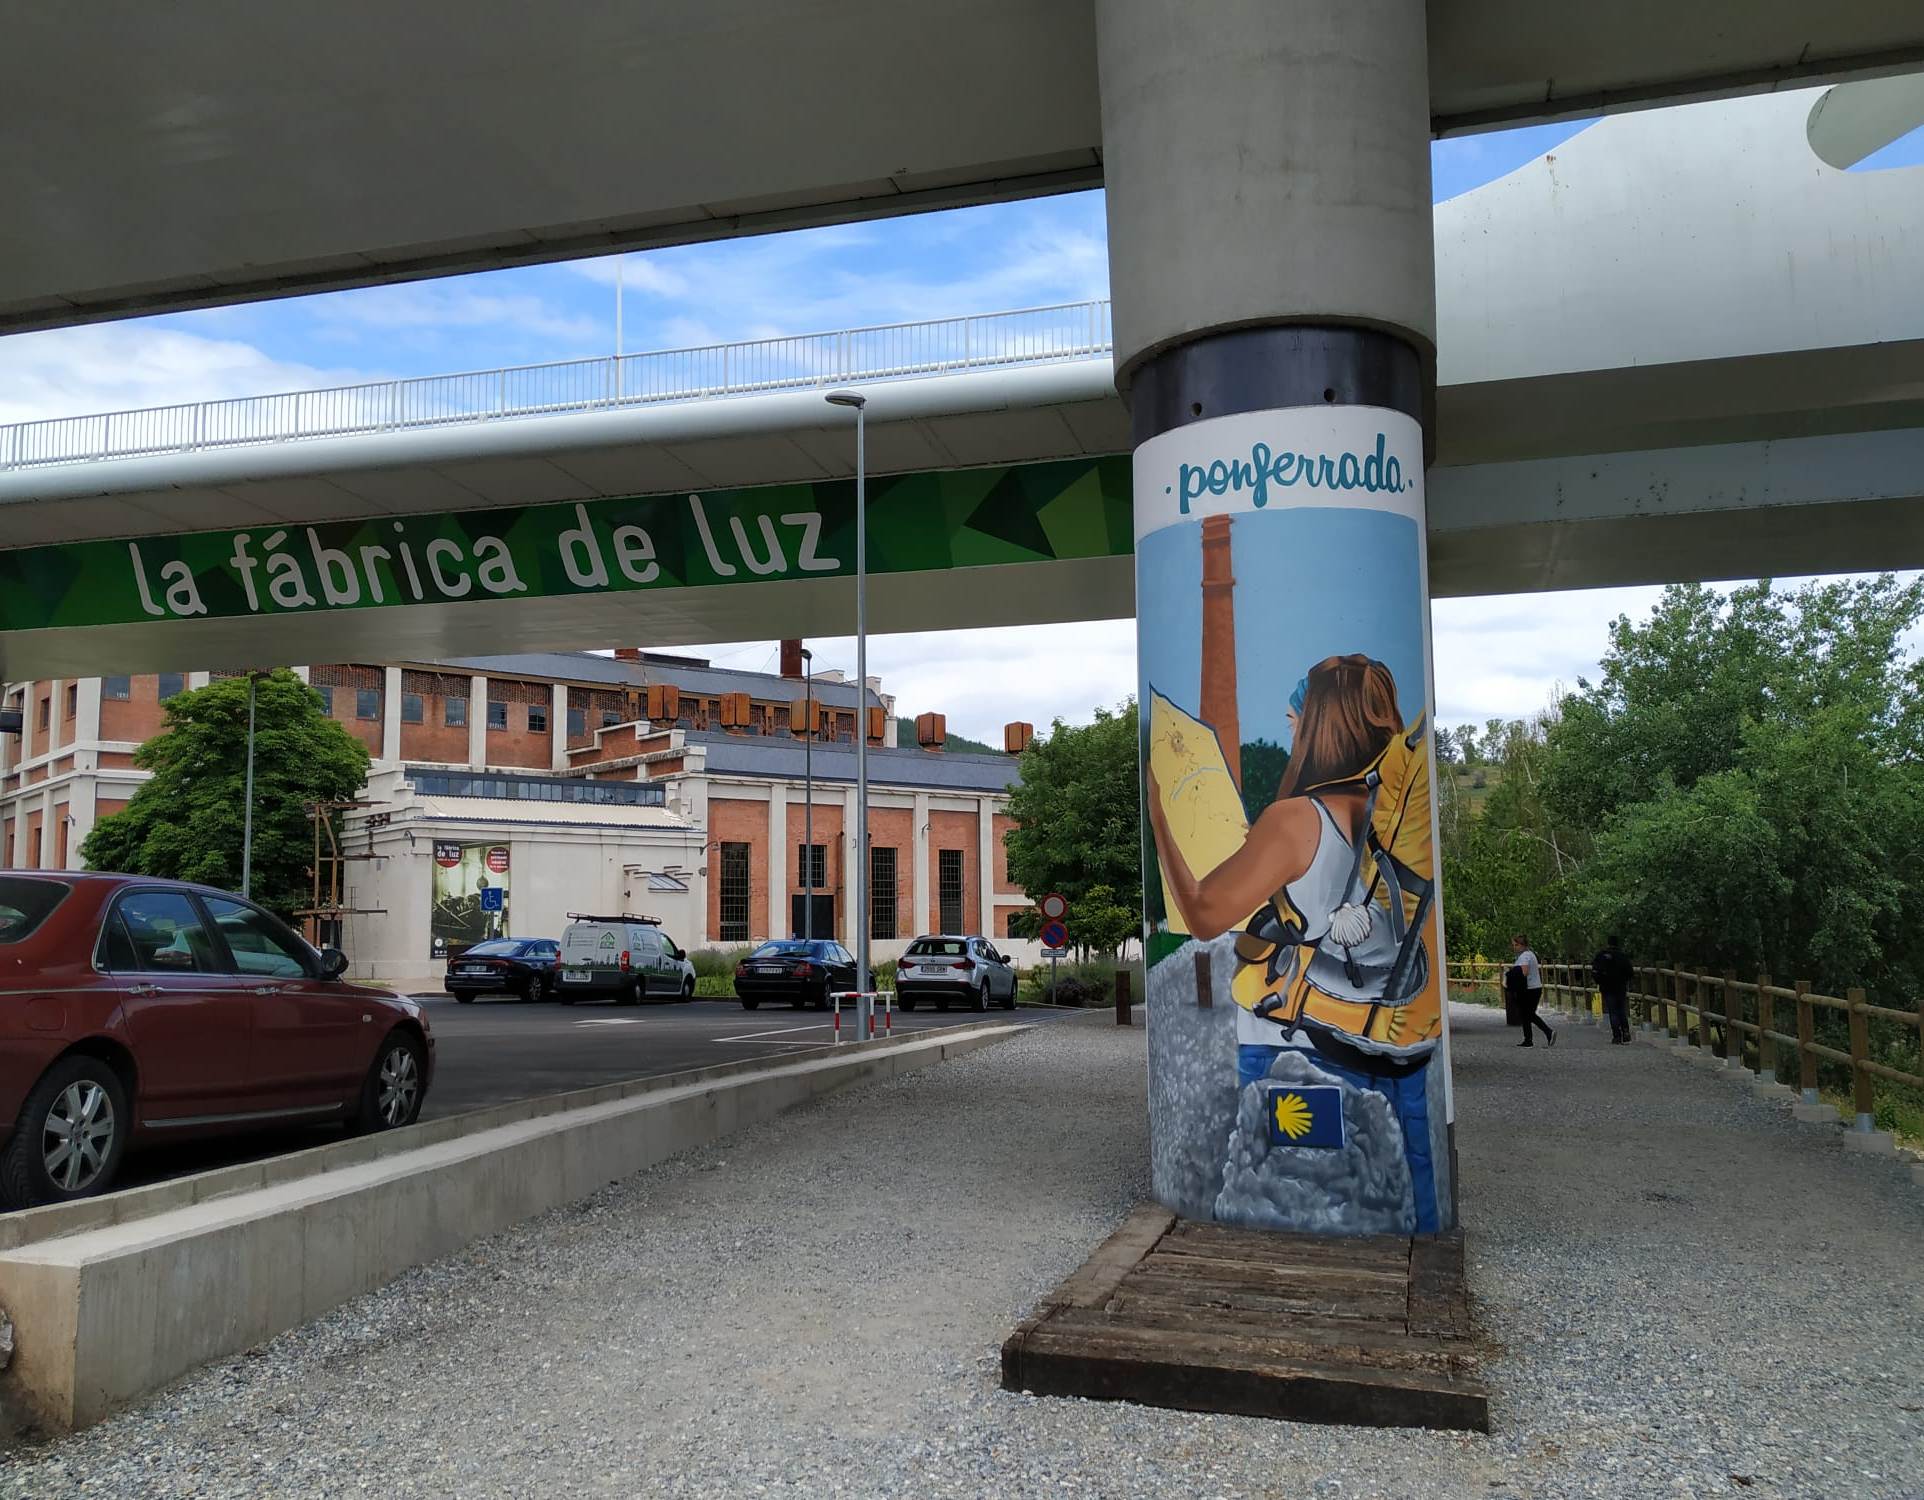 Las columnas del puente del Centenario de Ponferrada se visten de arte urbano 3